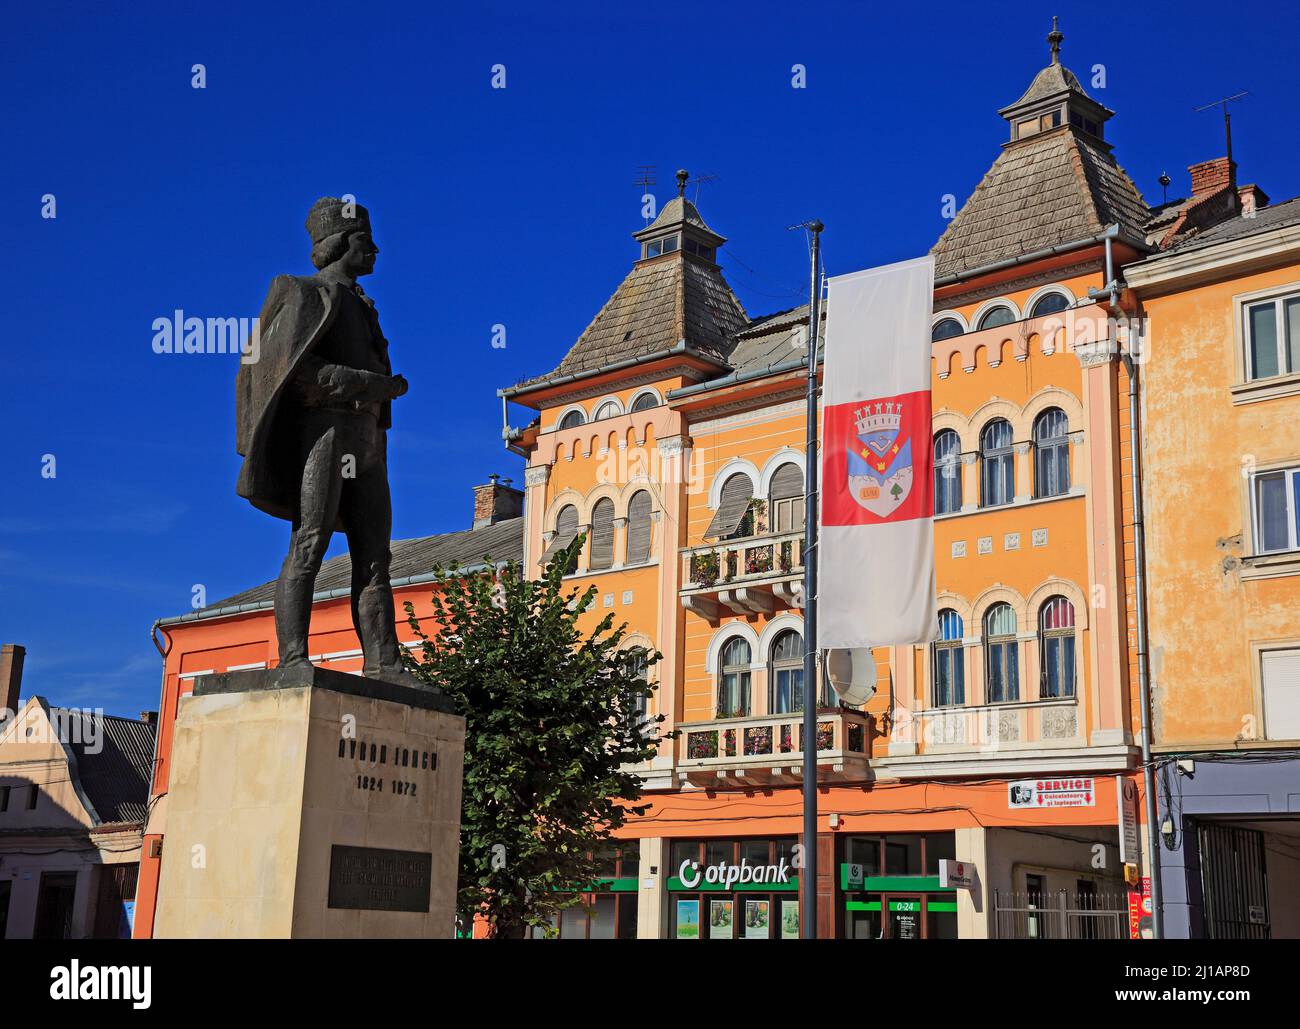 Stadtzentrum, Statua von Avram Iancu, ein rumänischer Rechtsanwalt und Revolutionär, Turda, deutsch Thorenburg, eine Stadt im Kreis Cluj in Siebenbürg Foto Stock